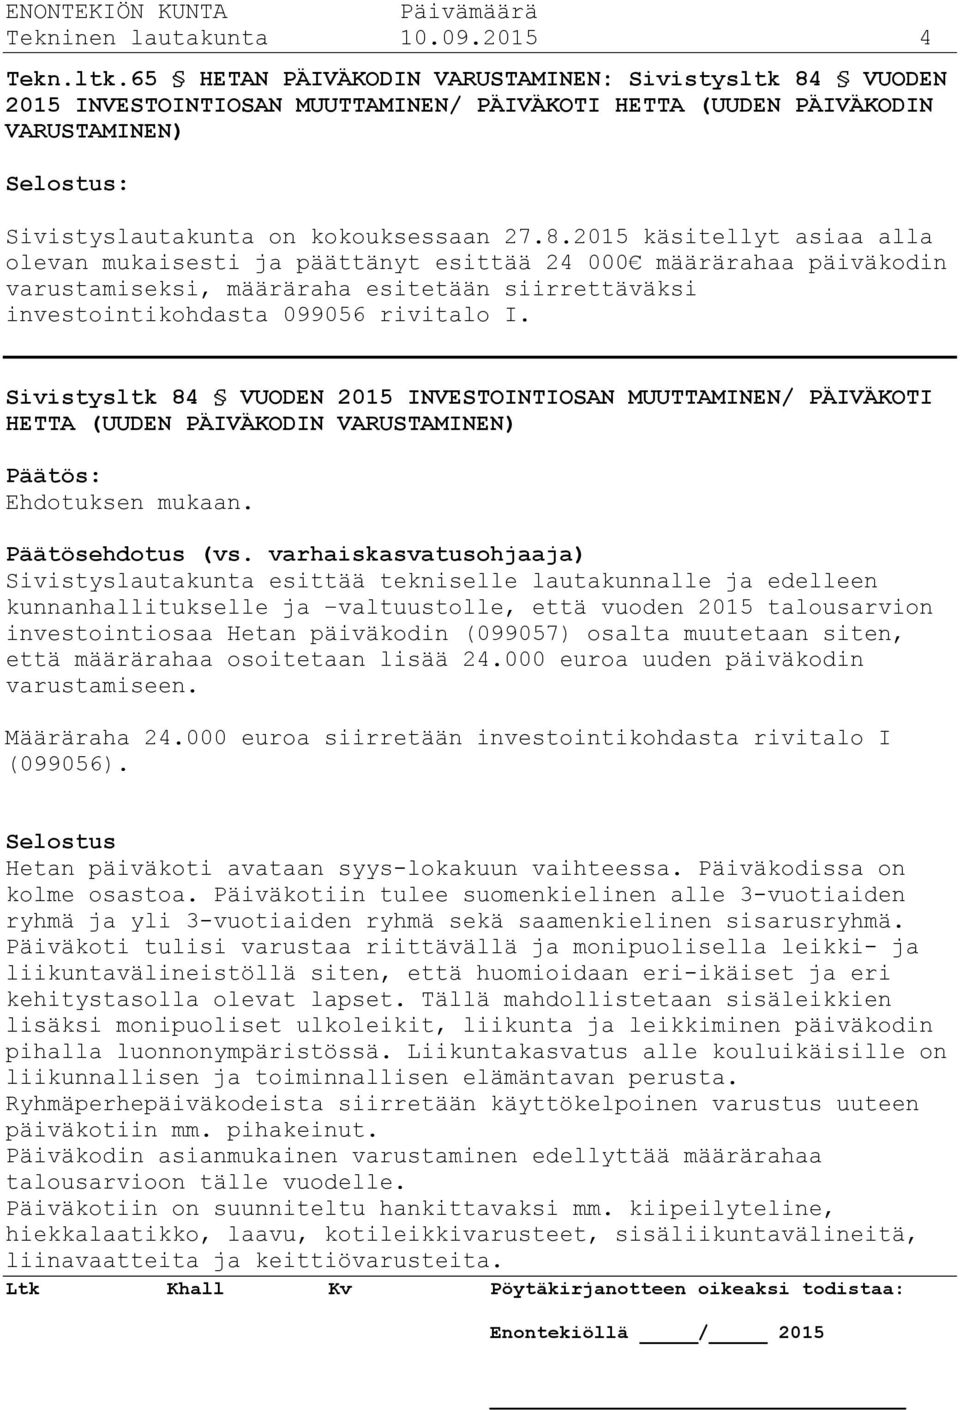 VUODEN 2015 INVESTOINTIOSAN MUUTTAMINEN/ PÄIVÄKOTI HETTA (UUDEN PÄIVÄKODIN VARUSTAMINEN) Selostus: Sivistyslautakunta on kokouksessaan 27.8.